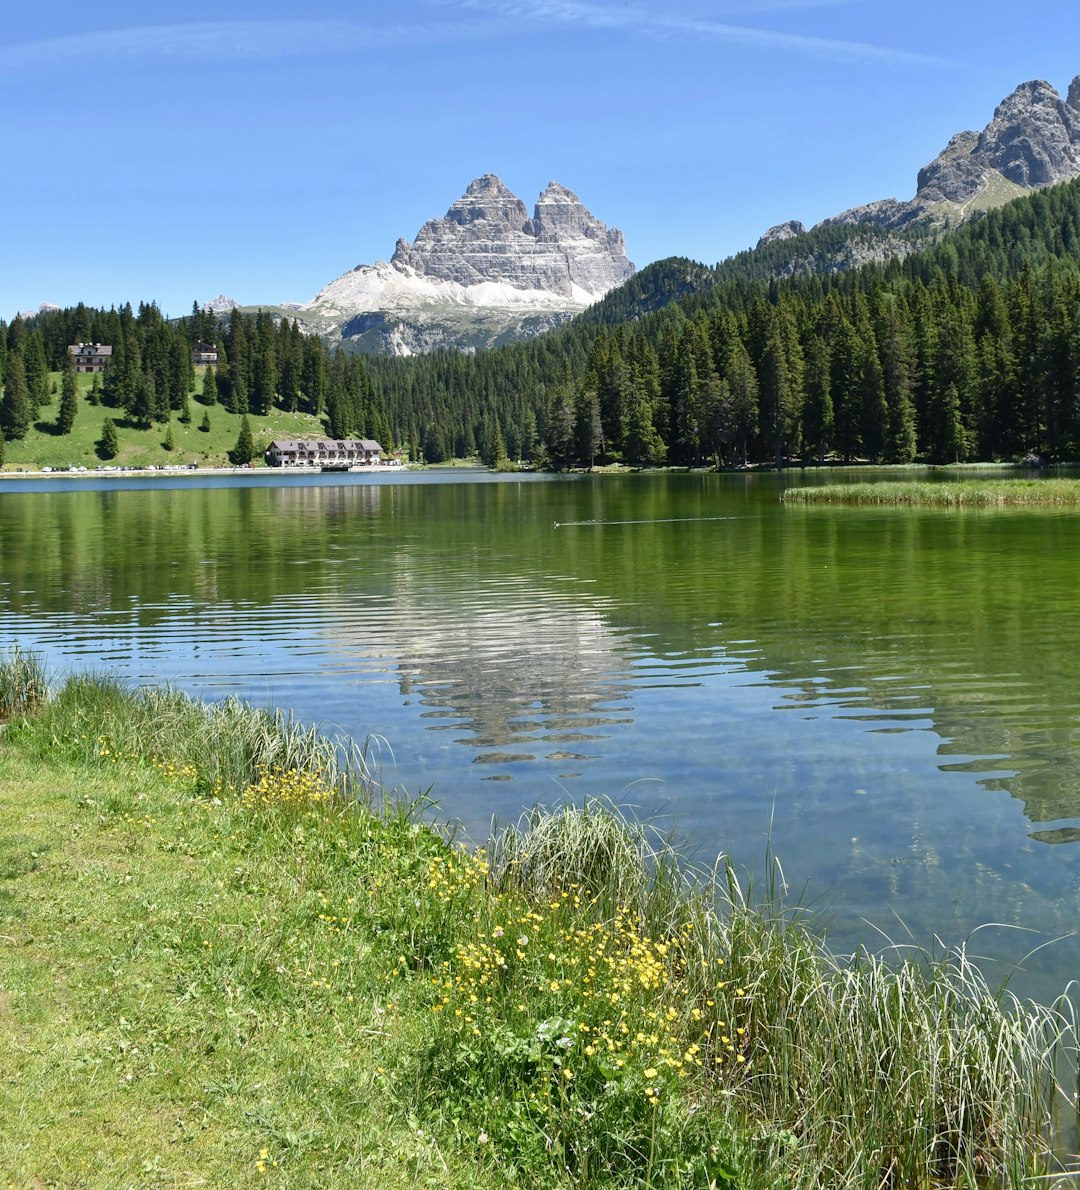 Lake photo spot Misurina Comune di Cavazzo Carnico